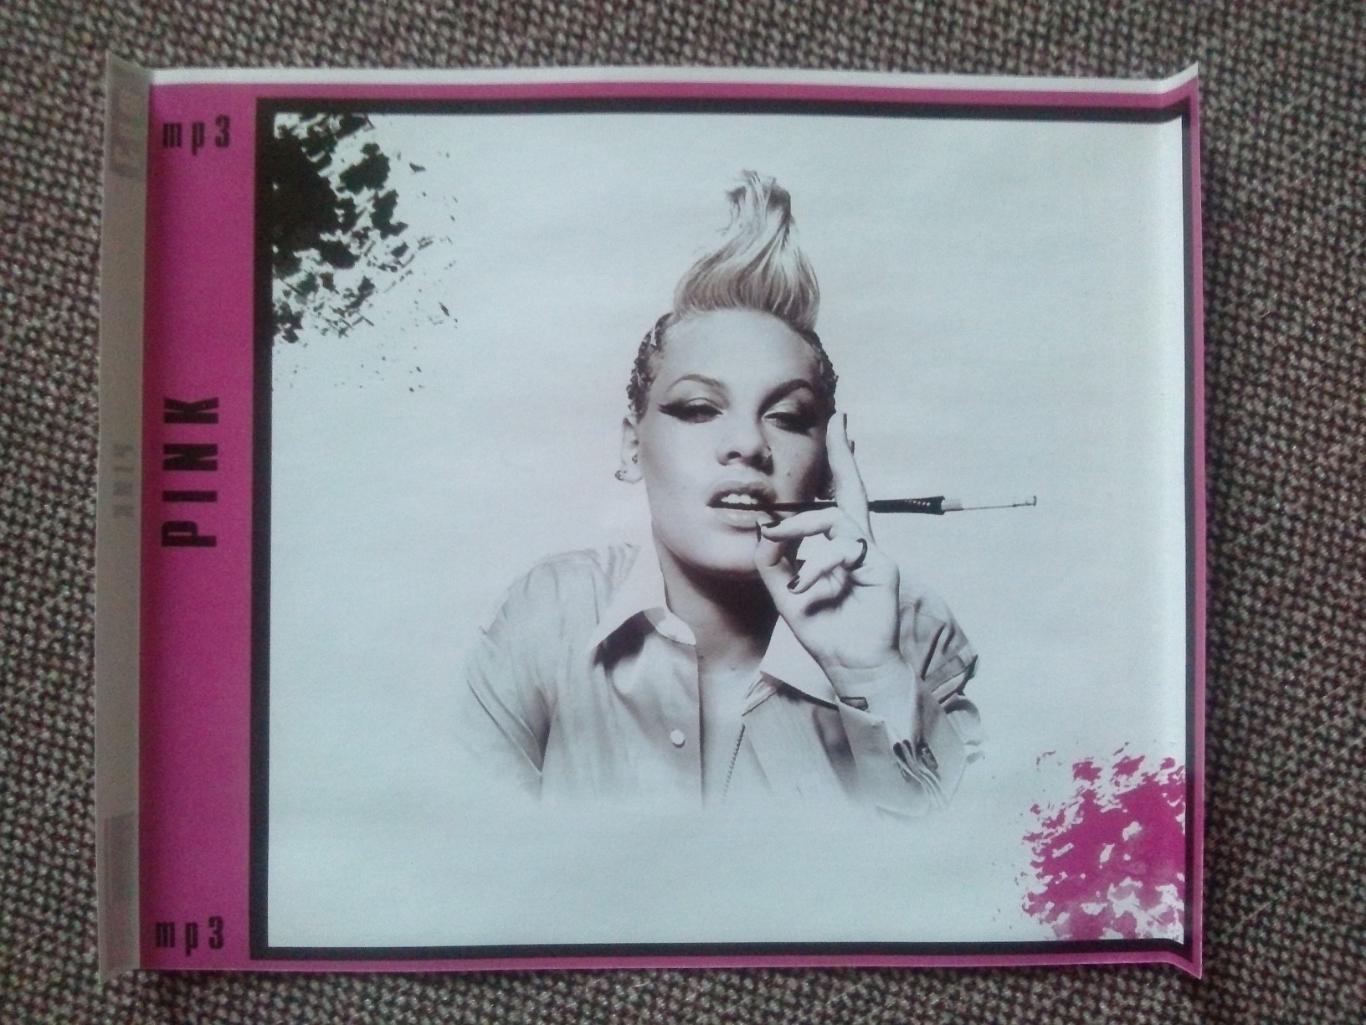 MP - 3 CD диск :Pink2000 - 2006 гг. (10 альбомов + 4 видео) лицензия Рок 4